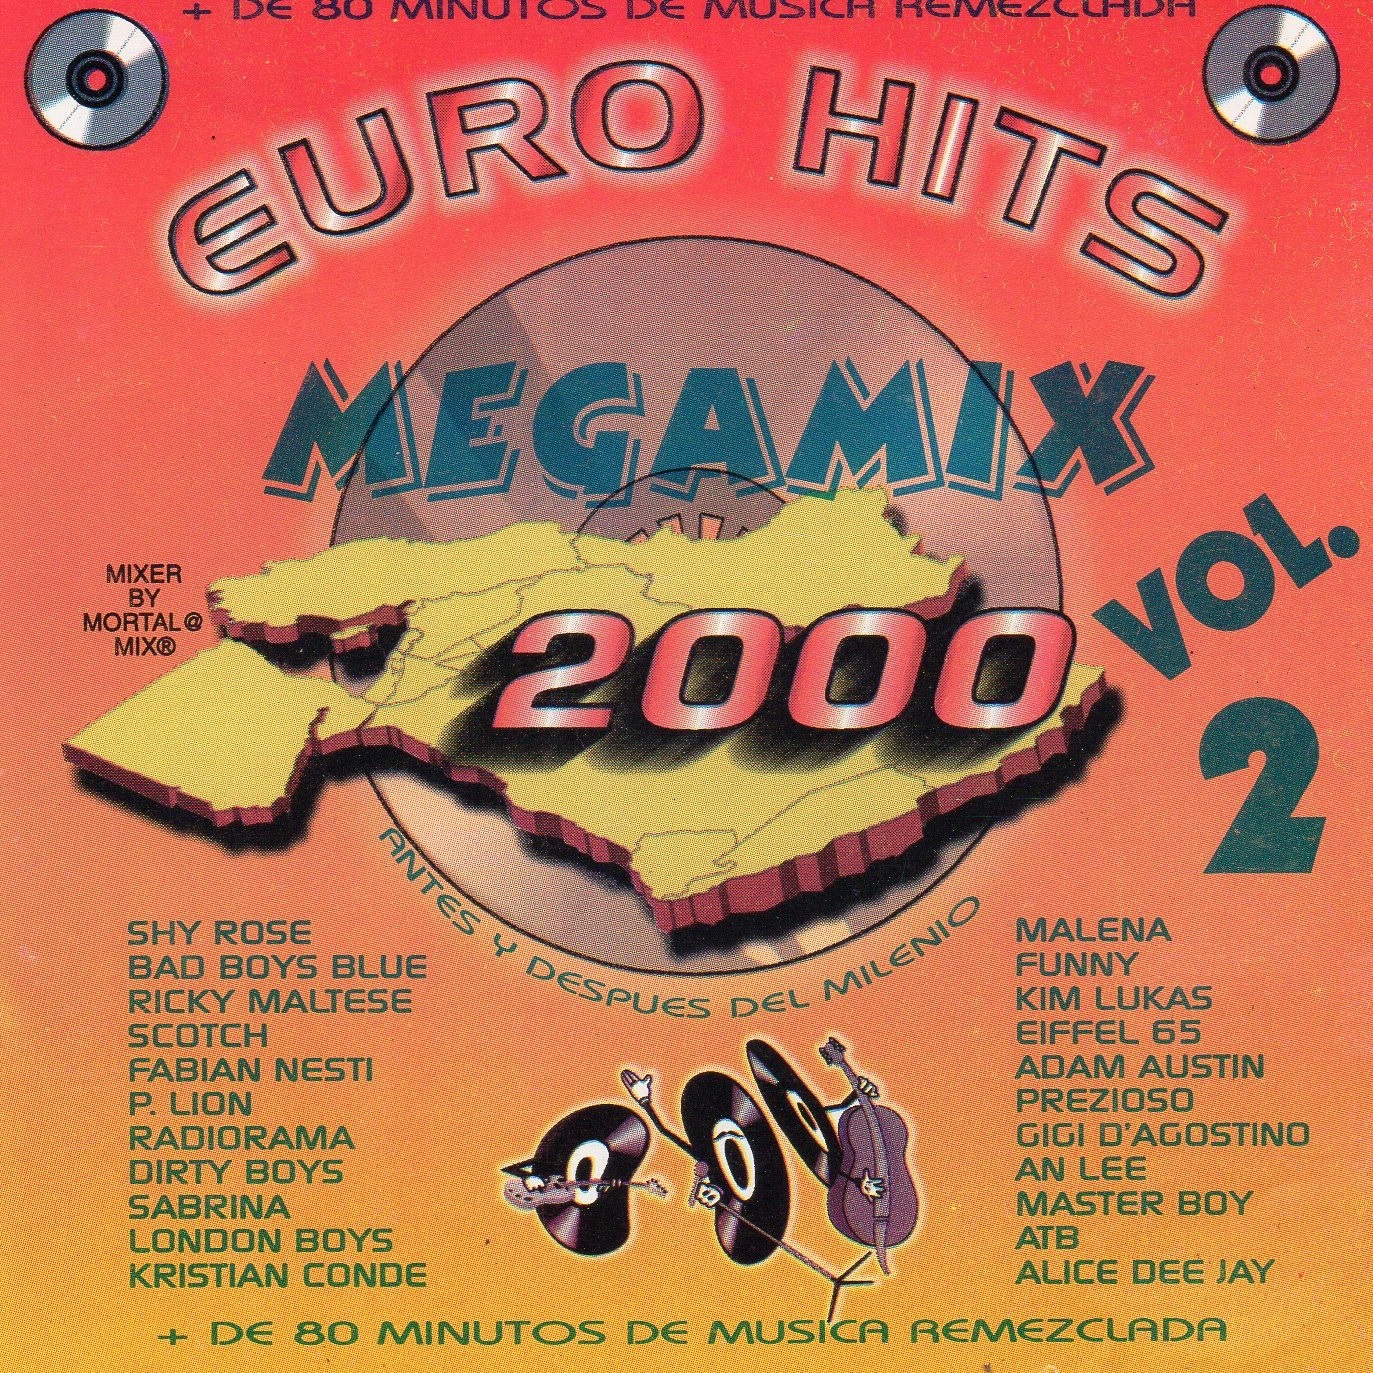 Euro Hits MegaMix 2000 Vol. 2